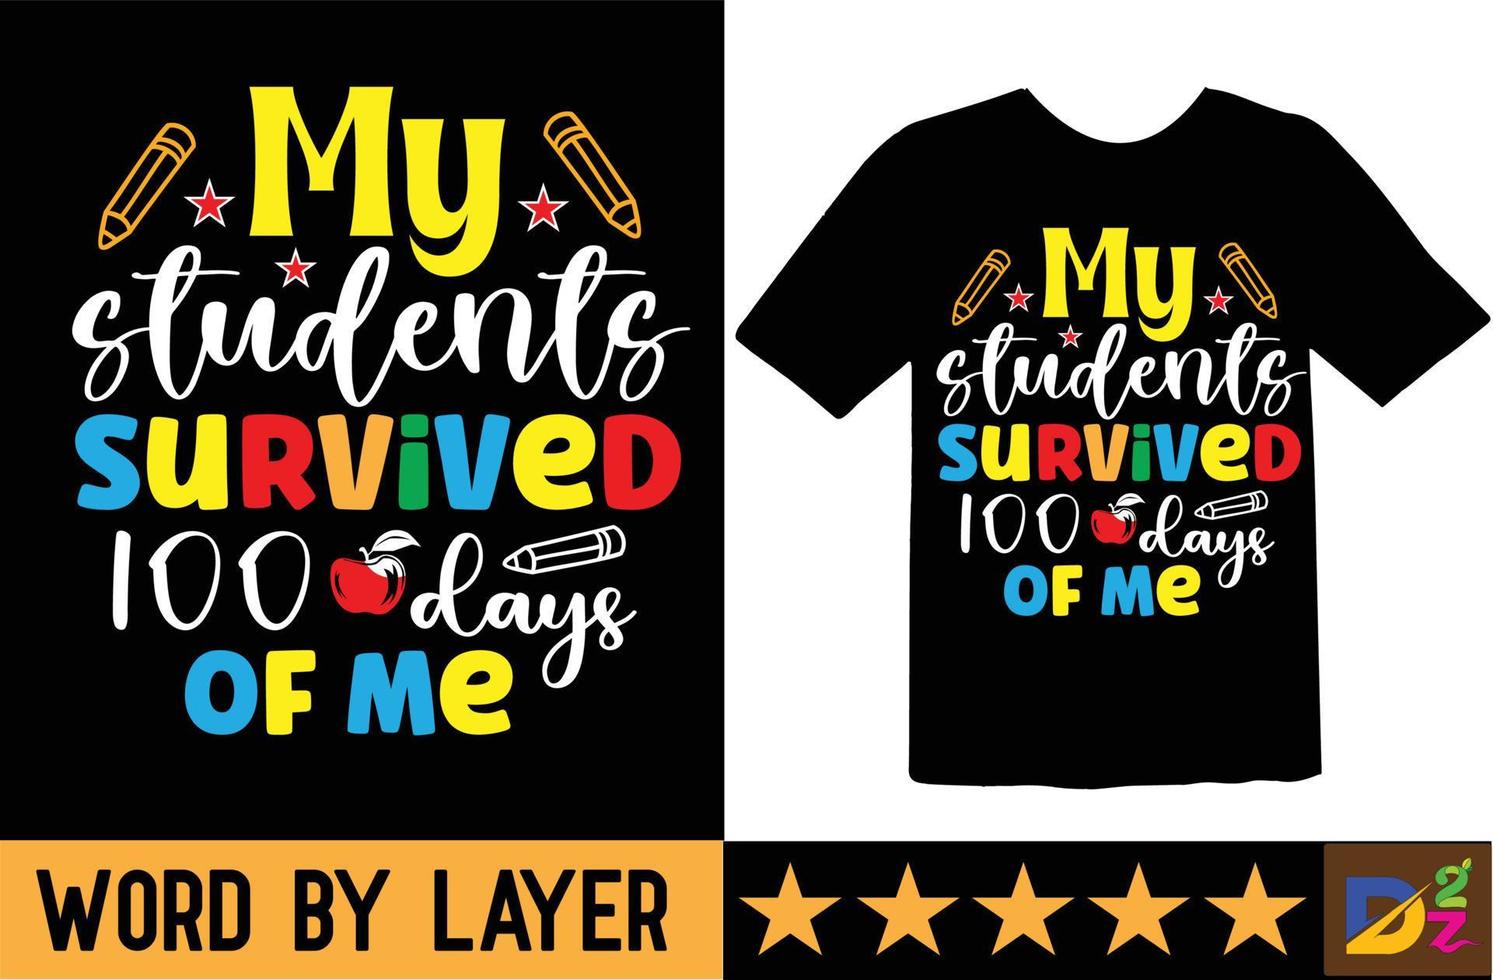 mio studenti sopravvissuto 100 giorni di me svg t camicia design vettore